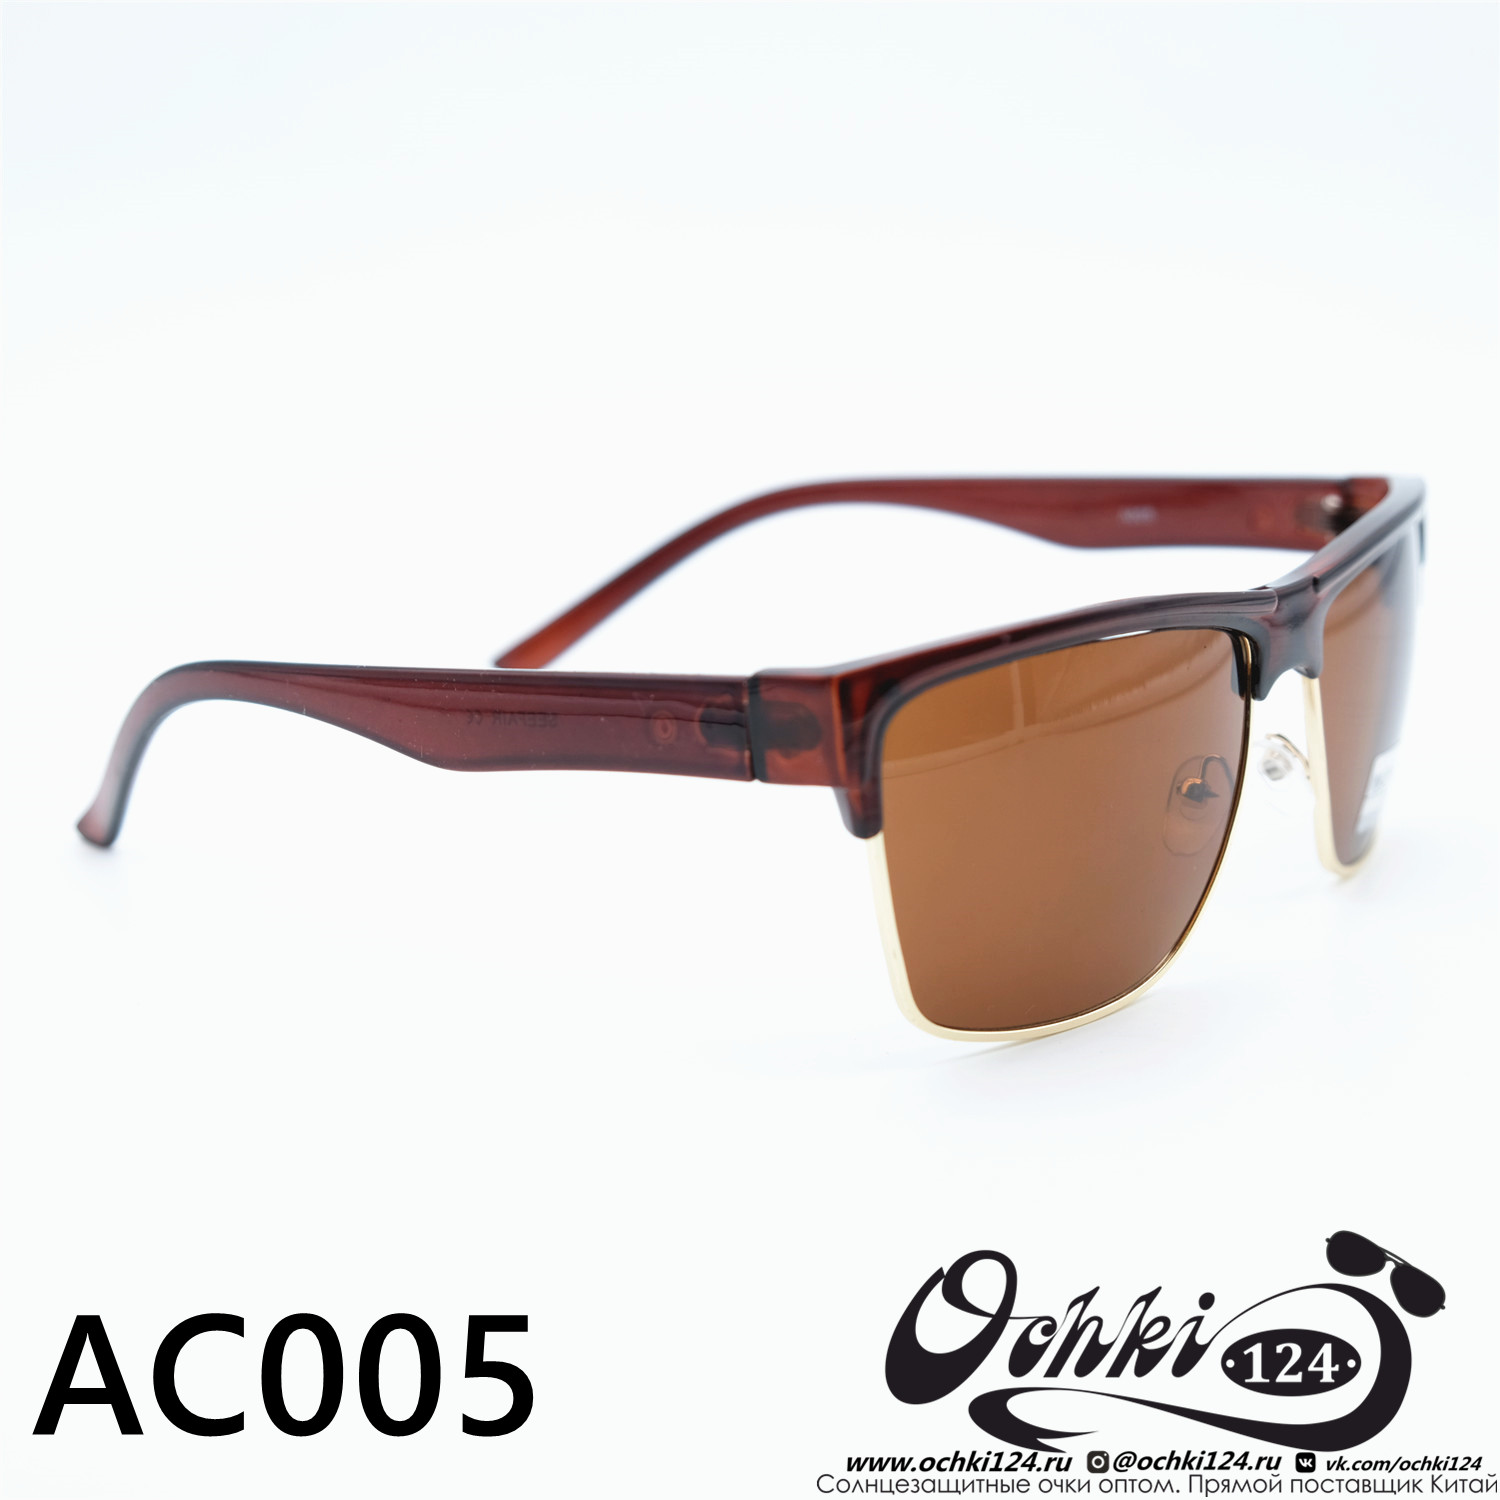  Солнцезащитные очки картинка 2023 Мужские Квадратные MATRIUXT AC005-C4 